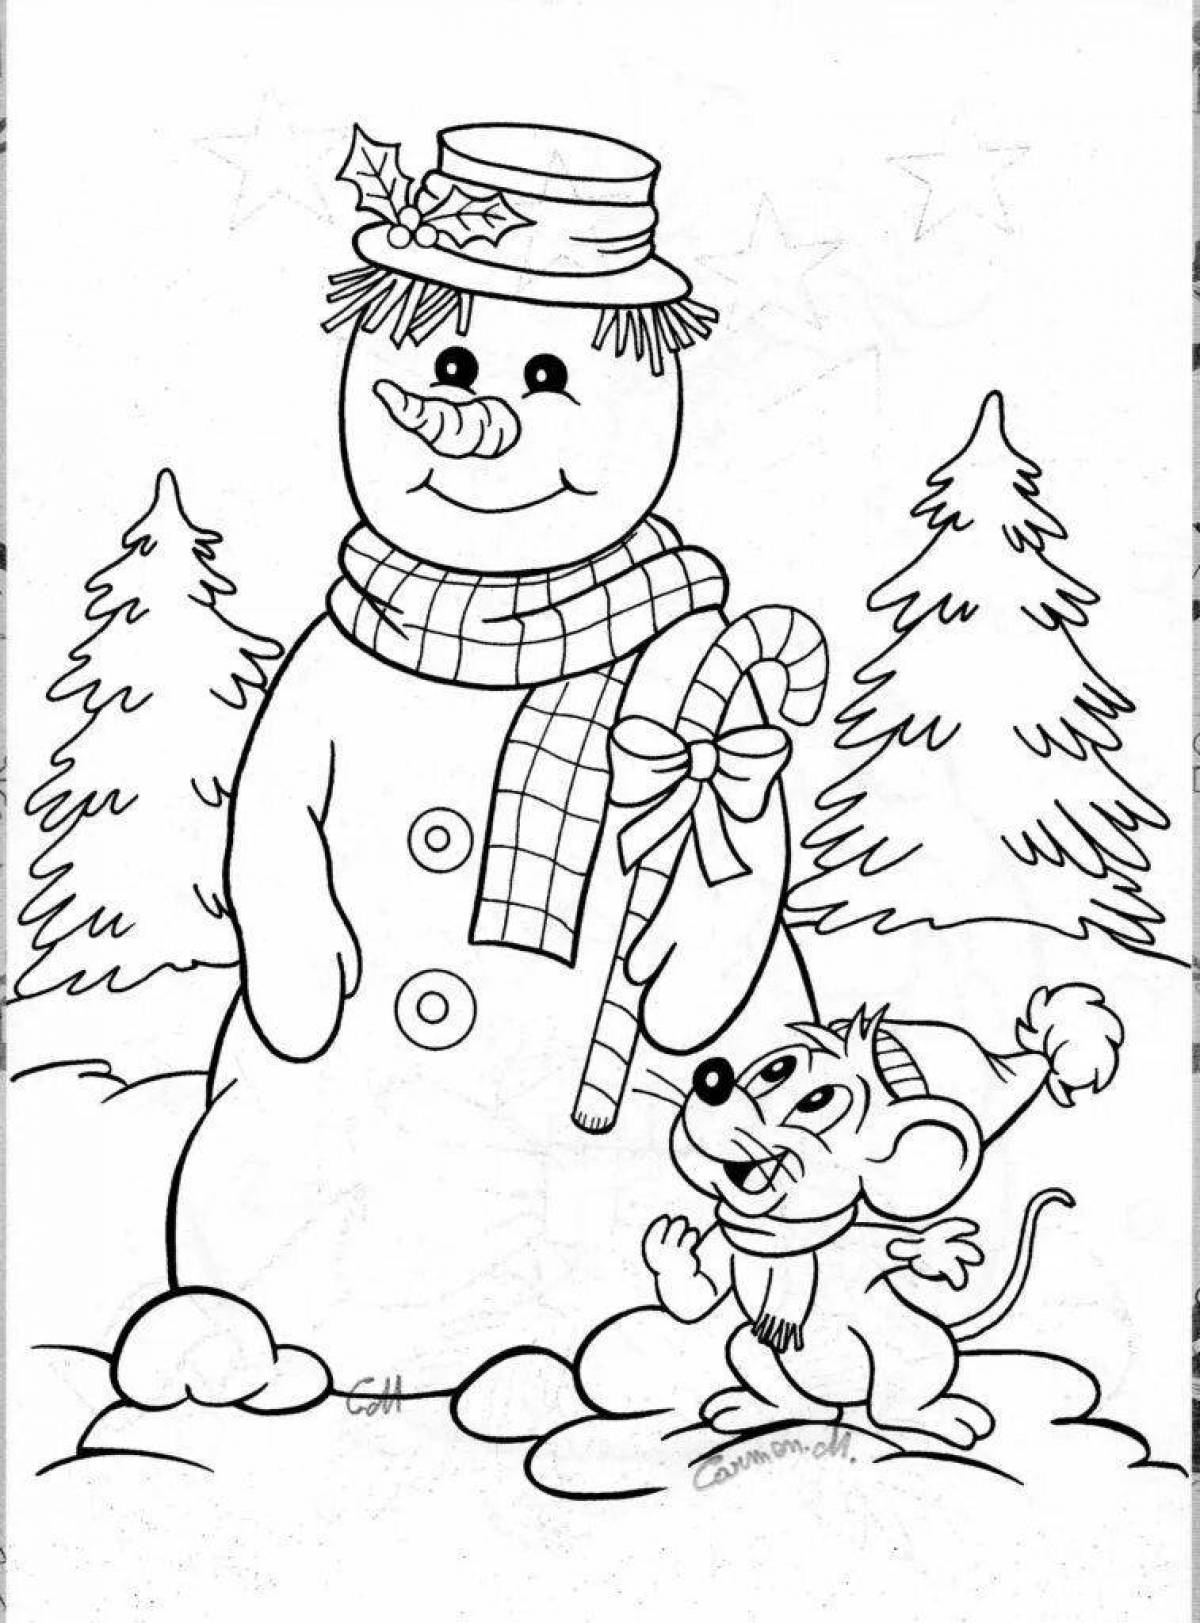 Fun coloring postman snowman